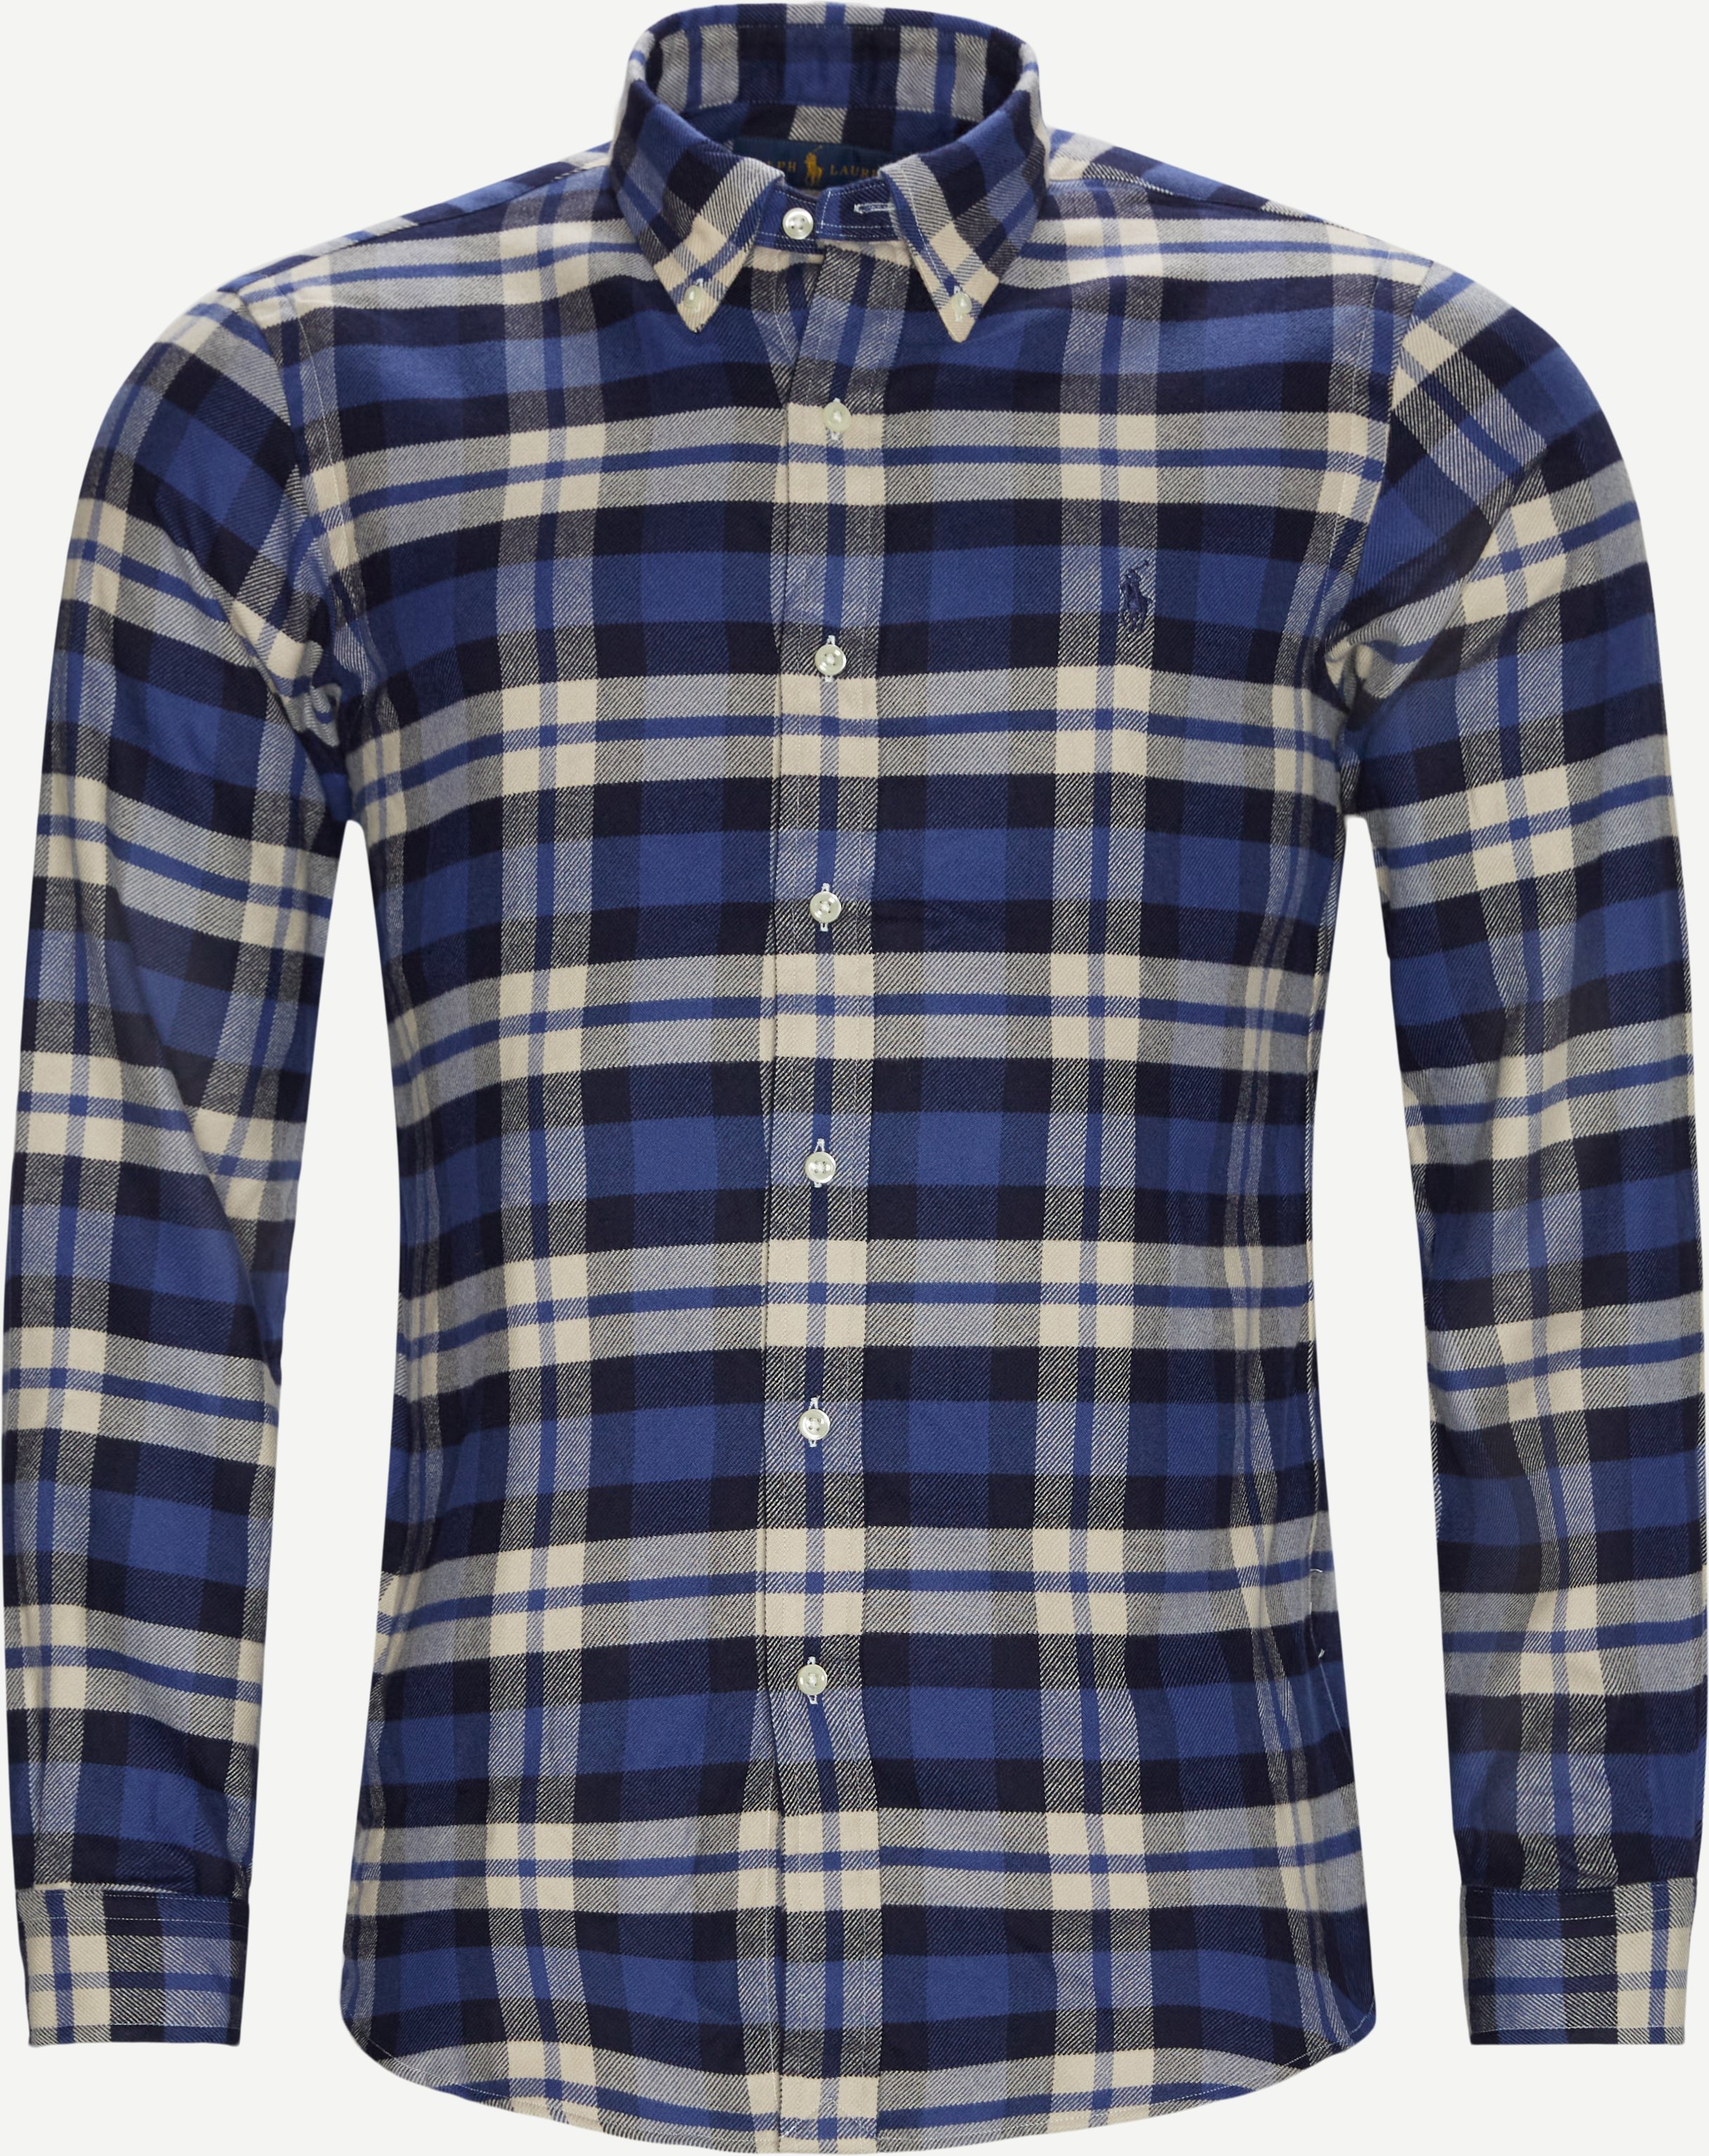 Sportskjorta - Skjortor - Custom fit - Blå